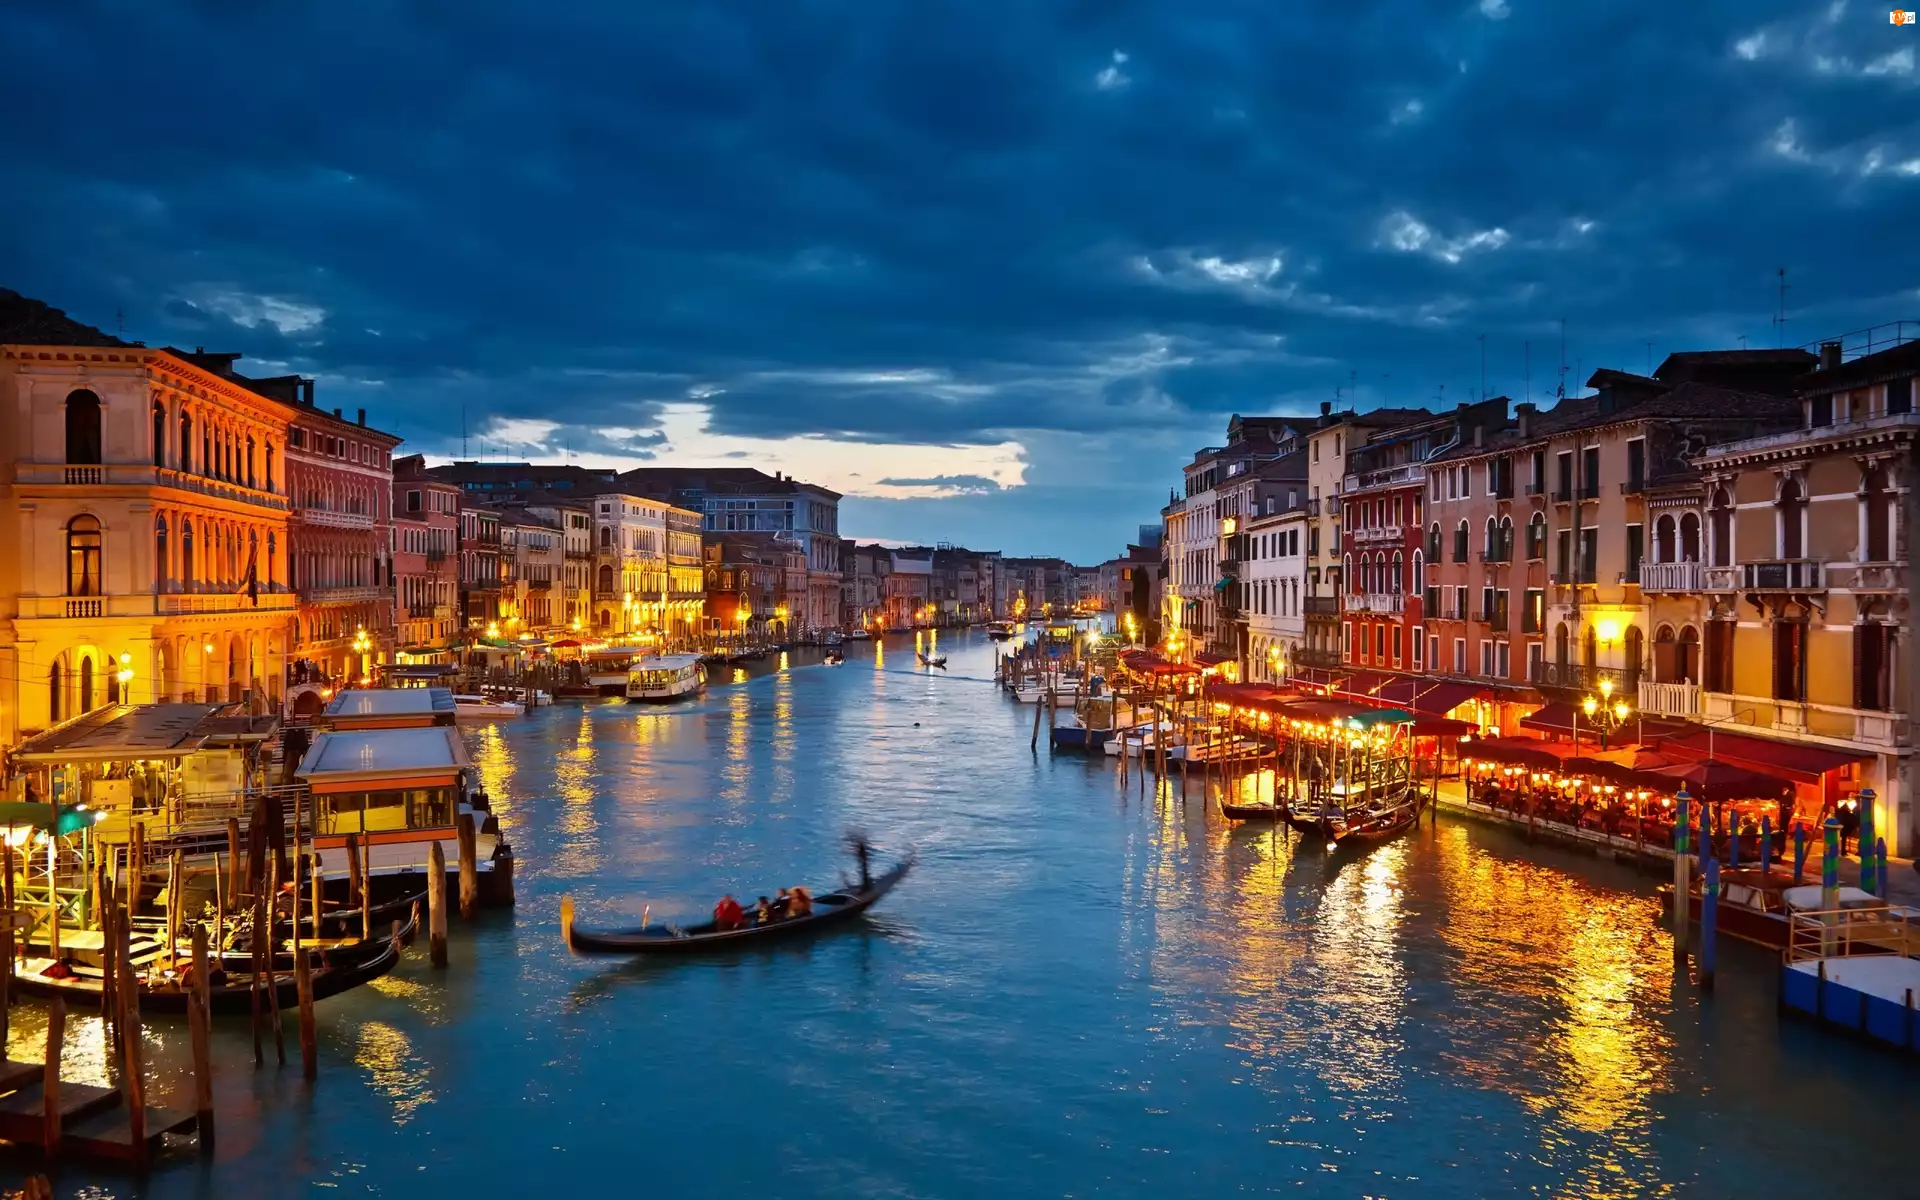 Wenecja, Światła, Gondola, Noc